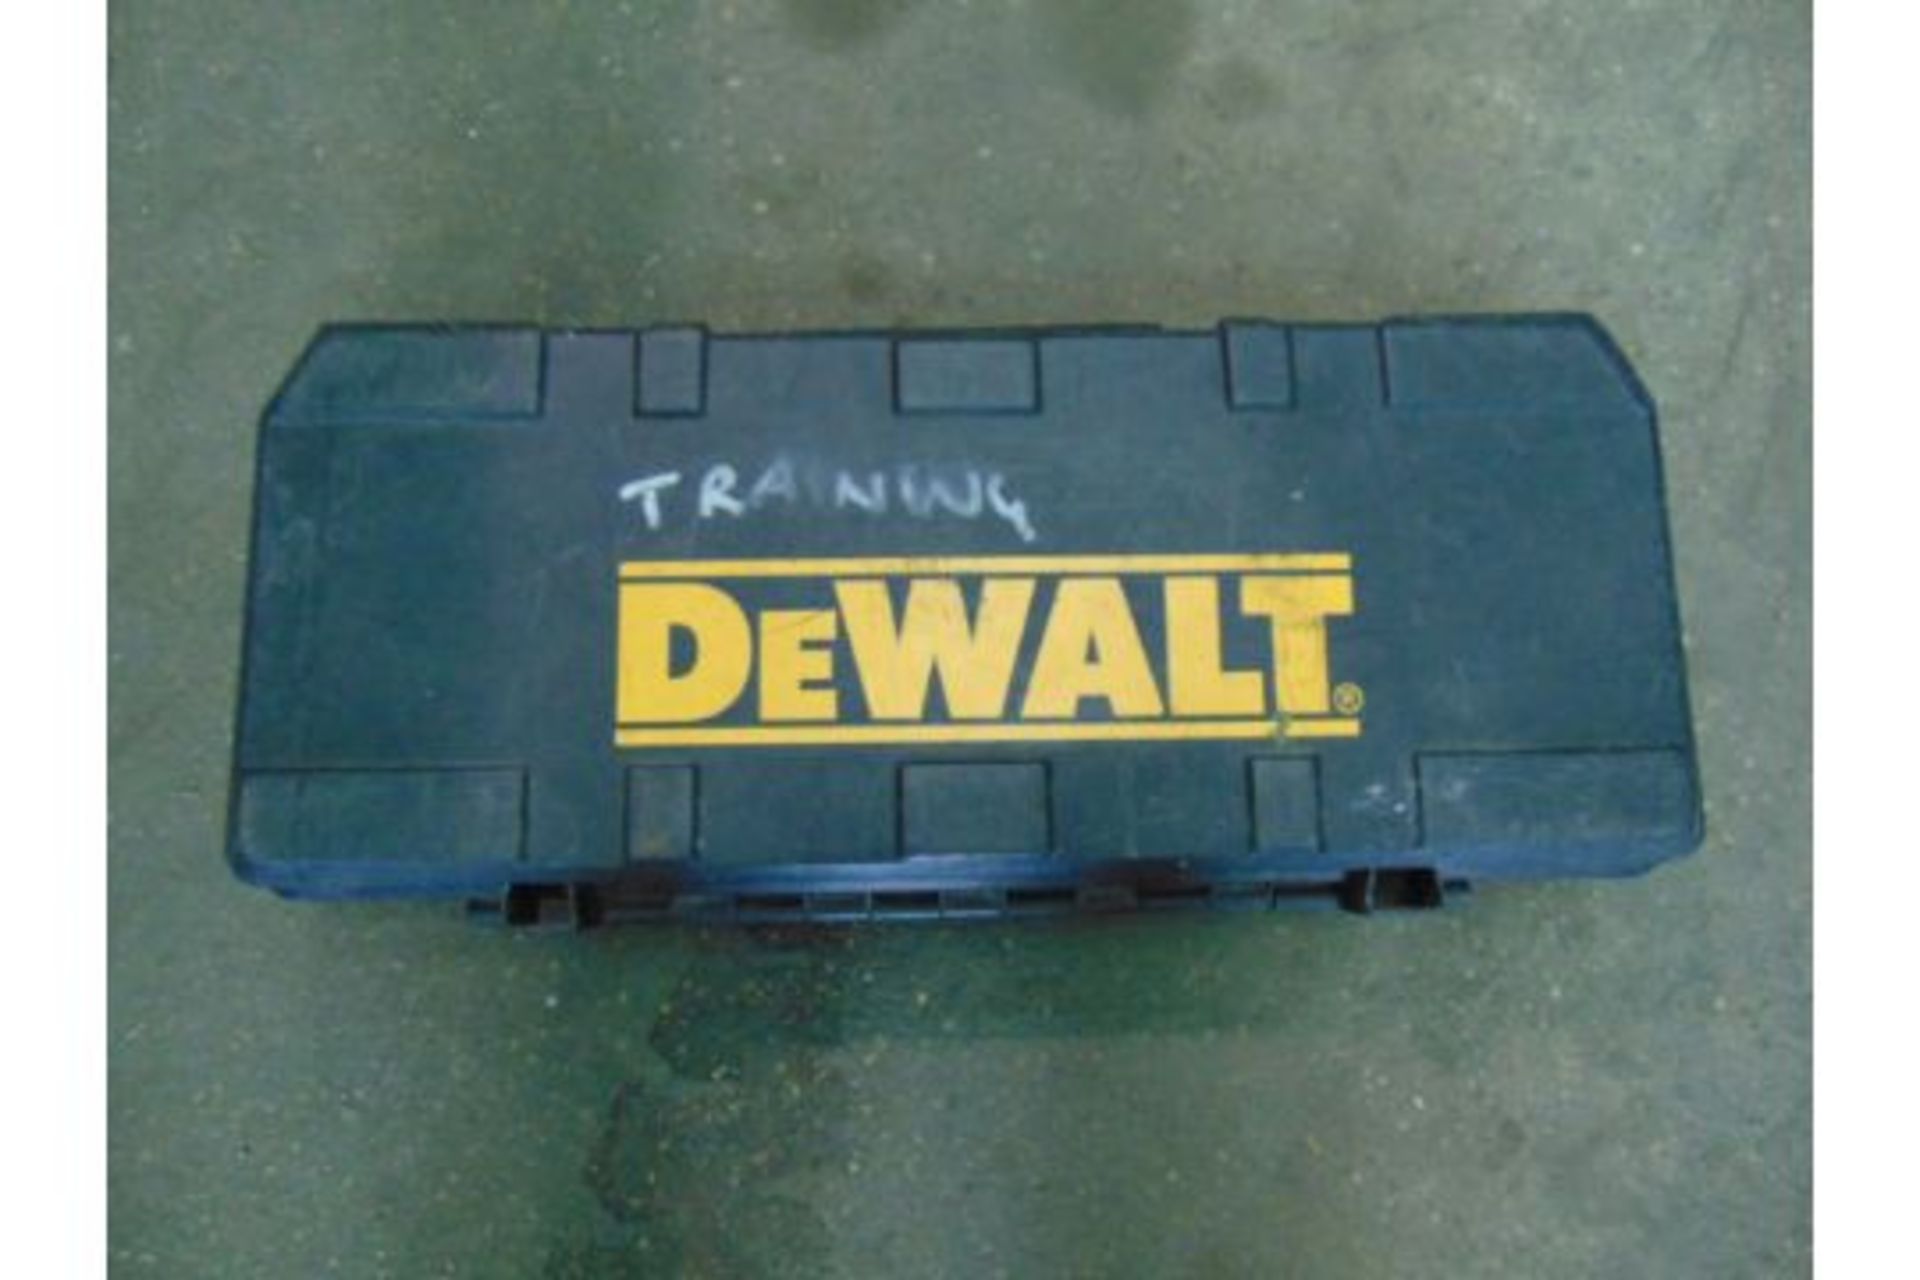 DeWalt DW938 Reciprocating Saw - Image 5 of 5